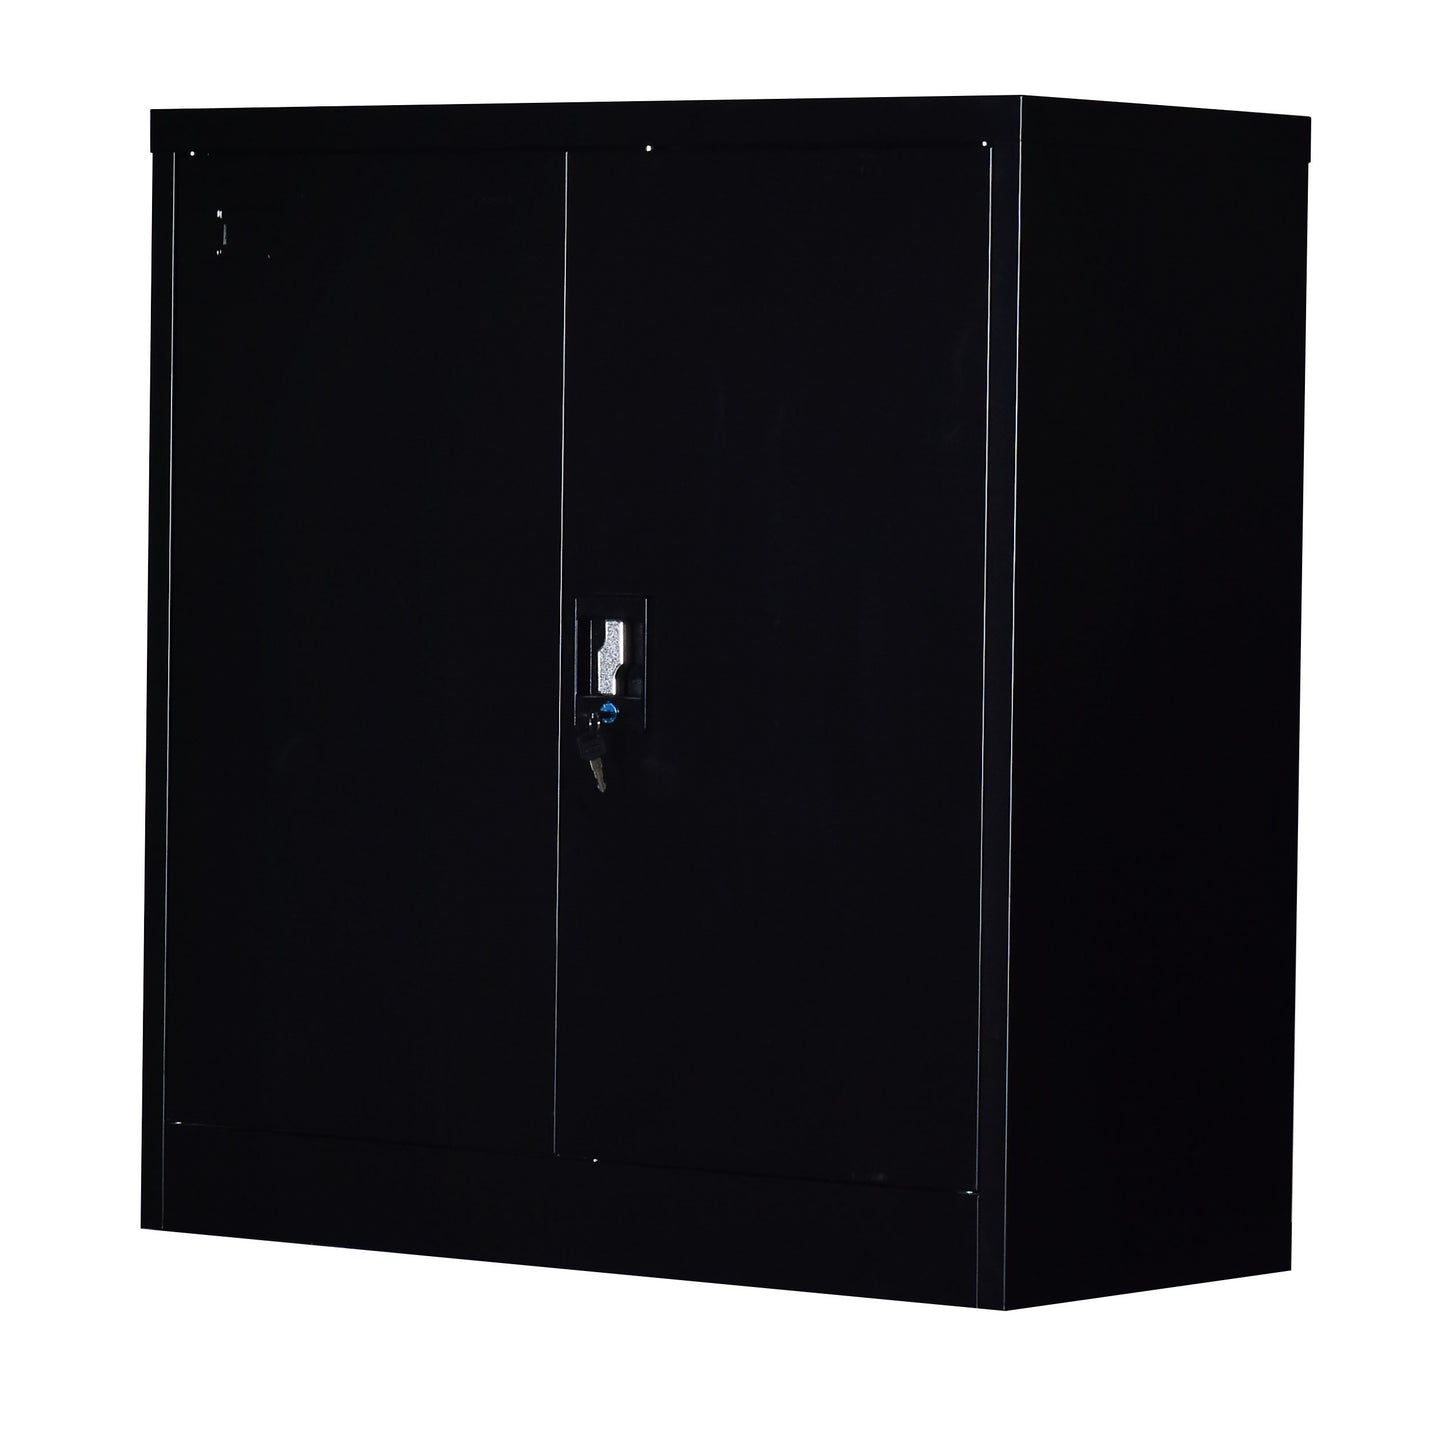 Two-Door Shelf Office Gym Filing Storage Locker Cabinet Safe - image8